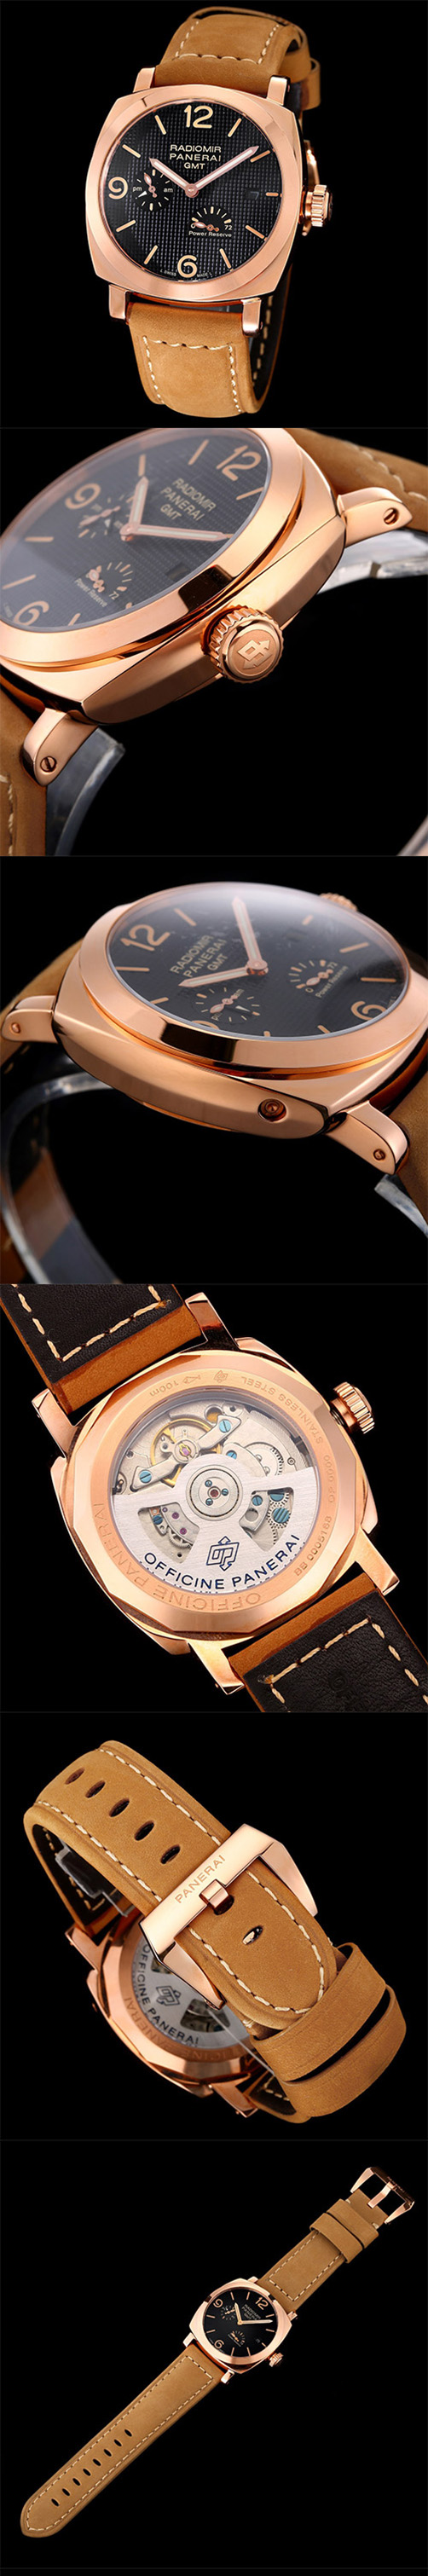 【販促活動中】新着商品パネライルミノールレP.9012レプリカ時計